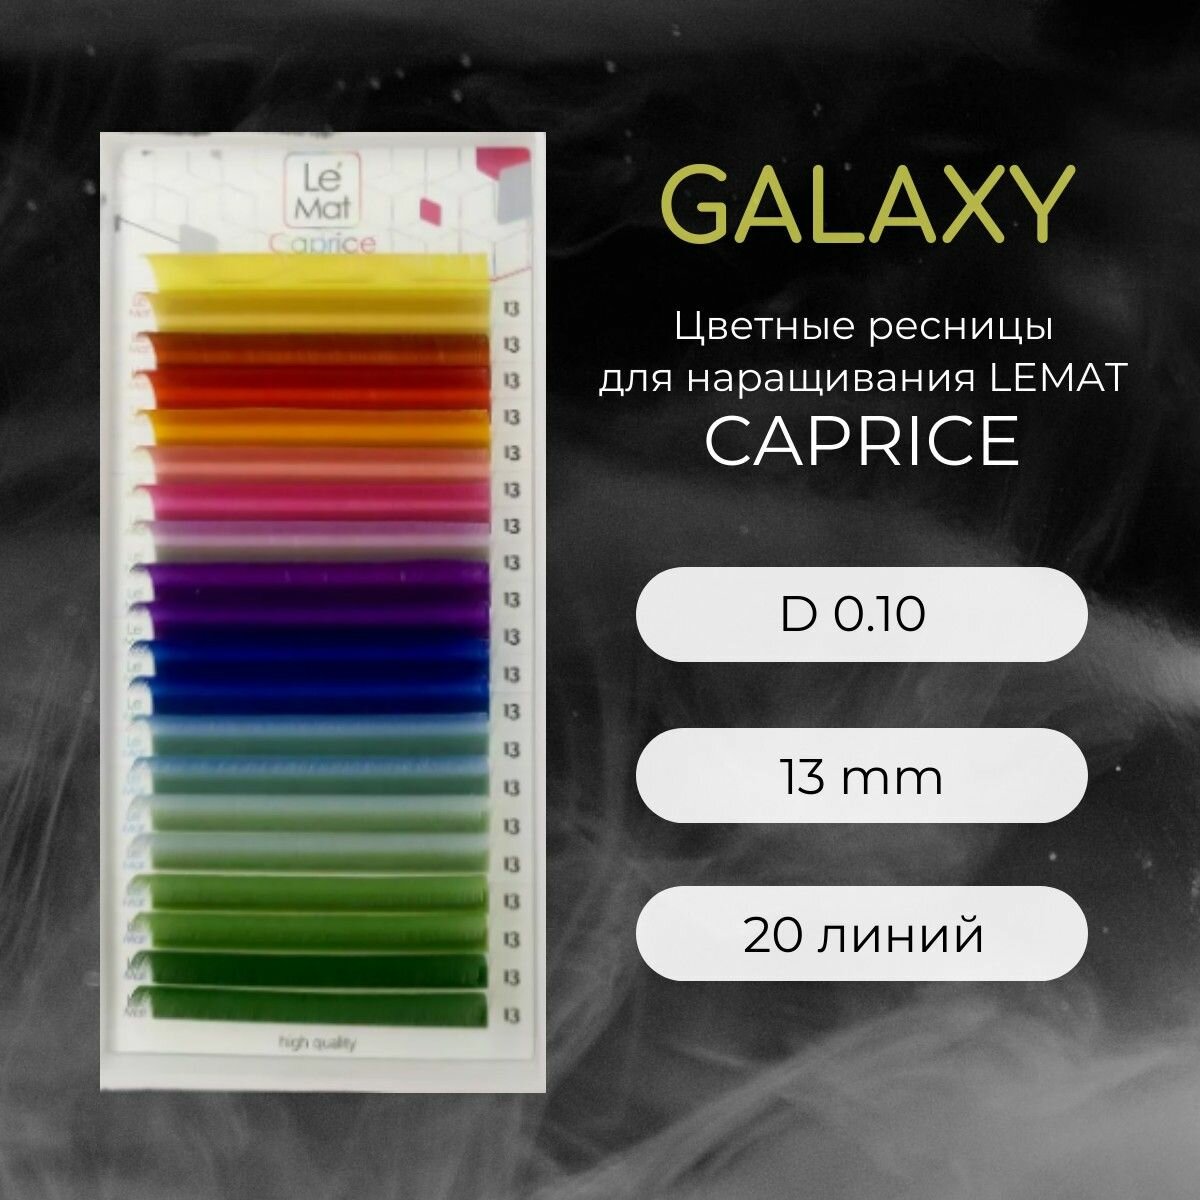 Ресницы для наращивания GALAXY D 0.10 13 mm "Caprice" 20 линий Le Maitre / Le Mat (Ле Мат / микс цветные)